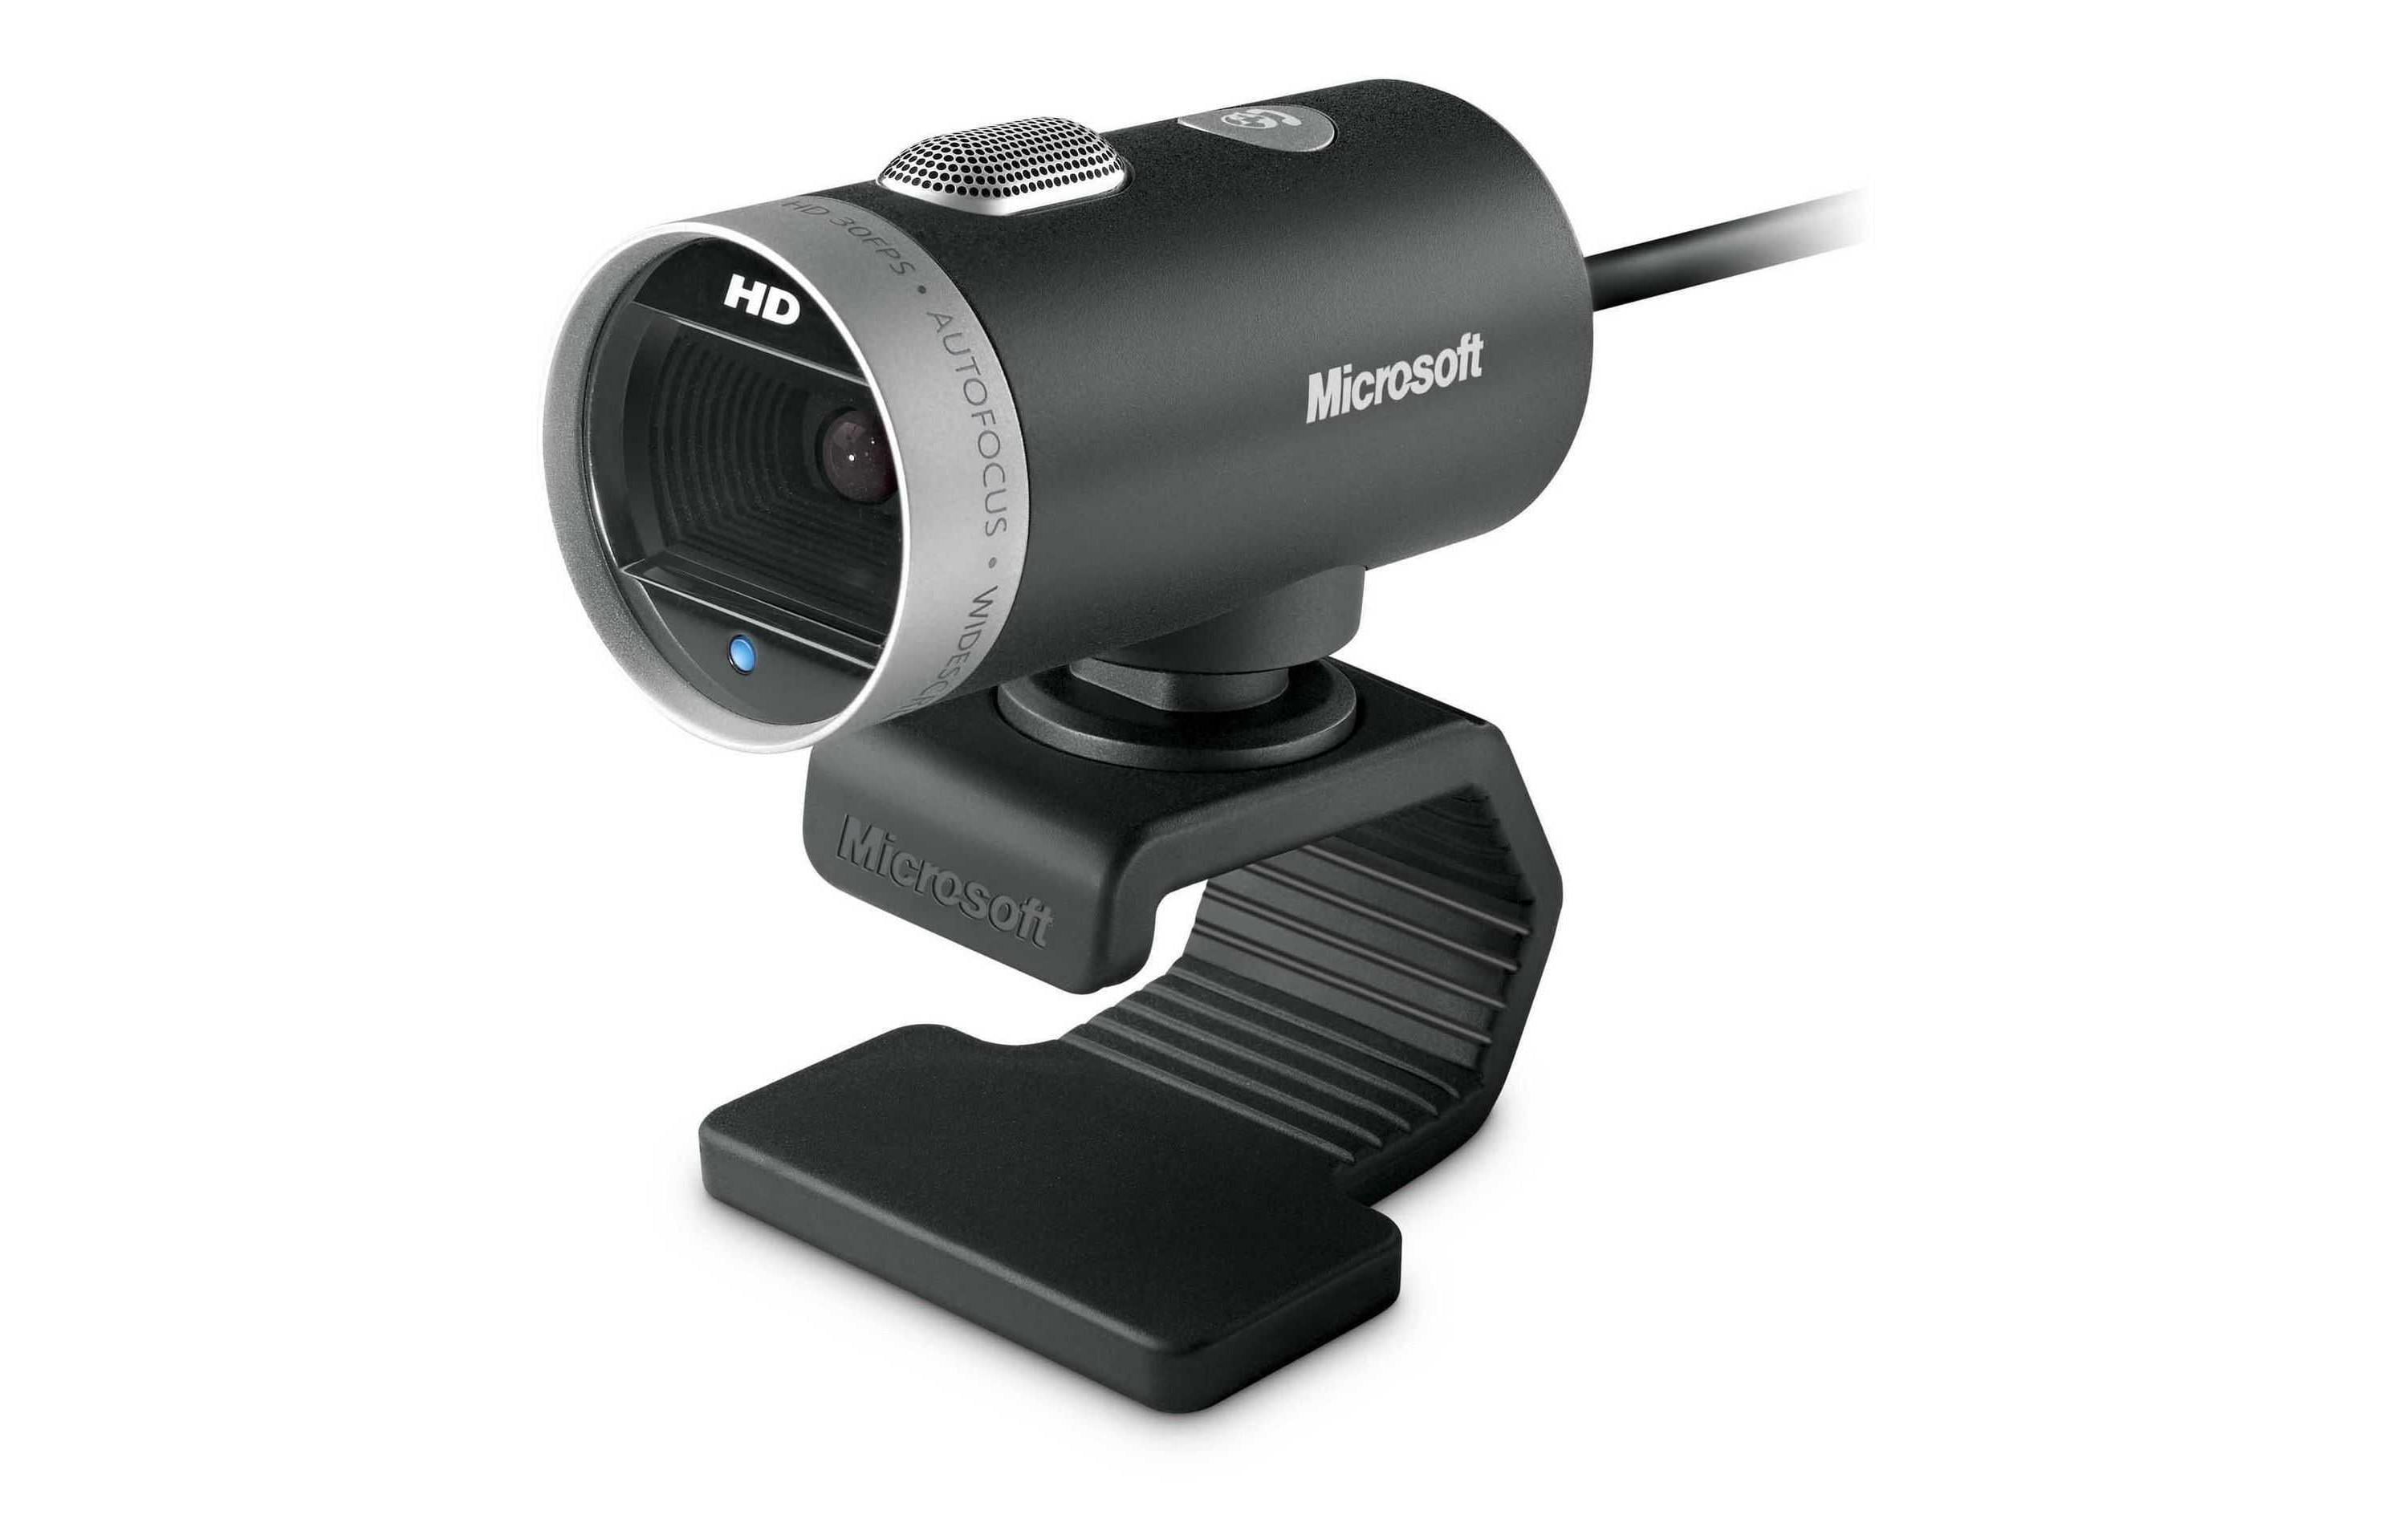 Microsoft Webcam LifeCam Cinema 16:9